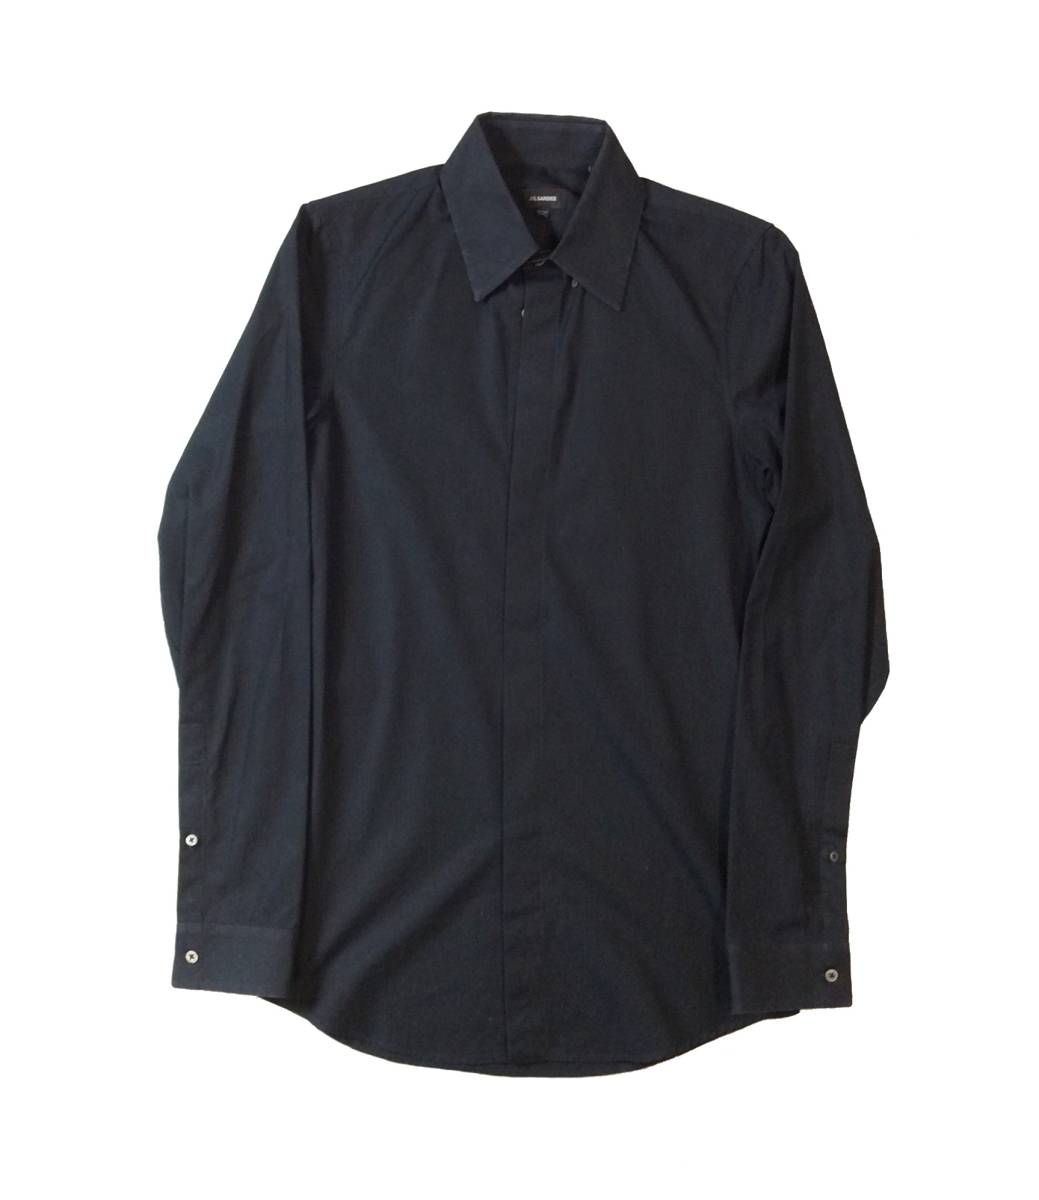 JIL SANDER ジルサンダー 長袖シャツ ドレスシャツ 隠しボタン ブラック 黒 コットン ITALY製 メンズ 37 141/2 送料250円 (ma)